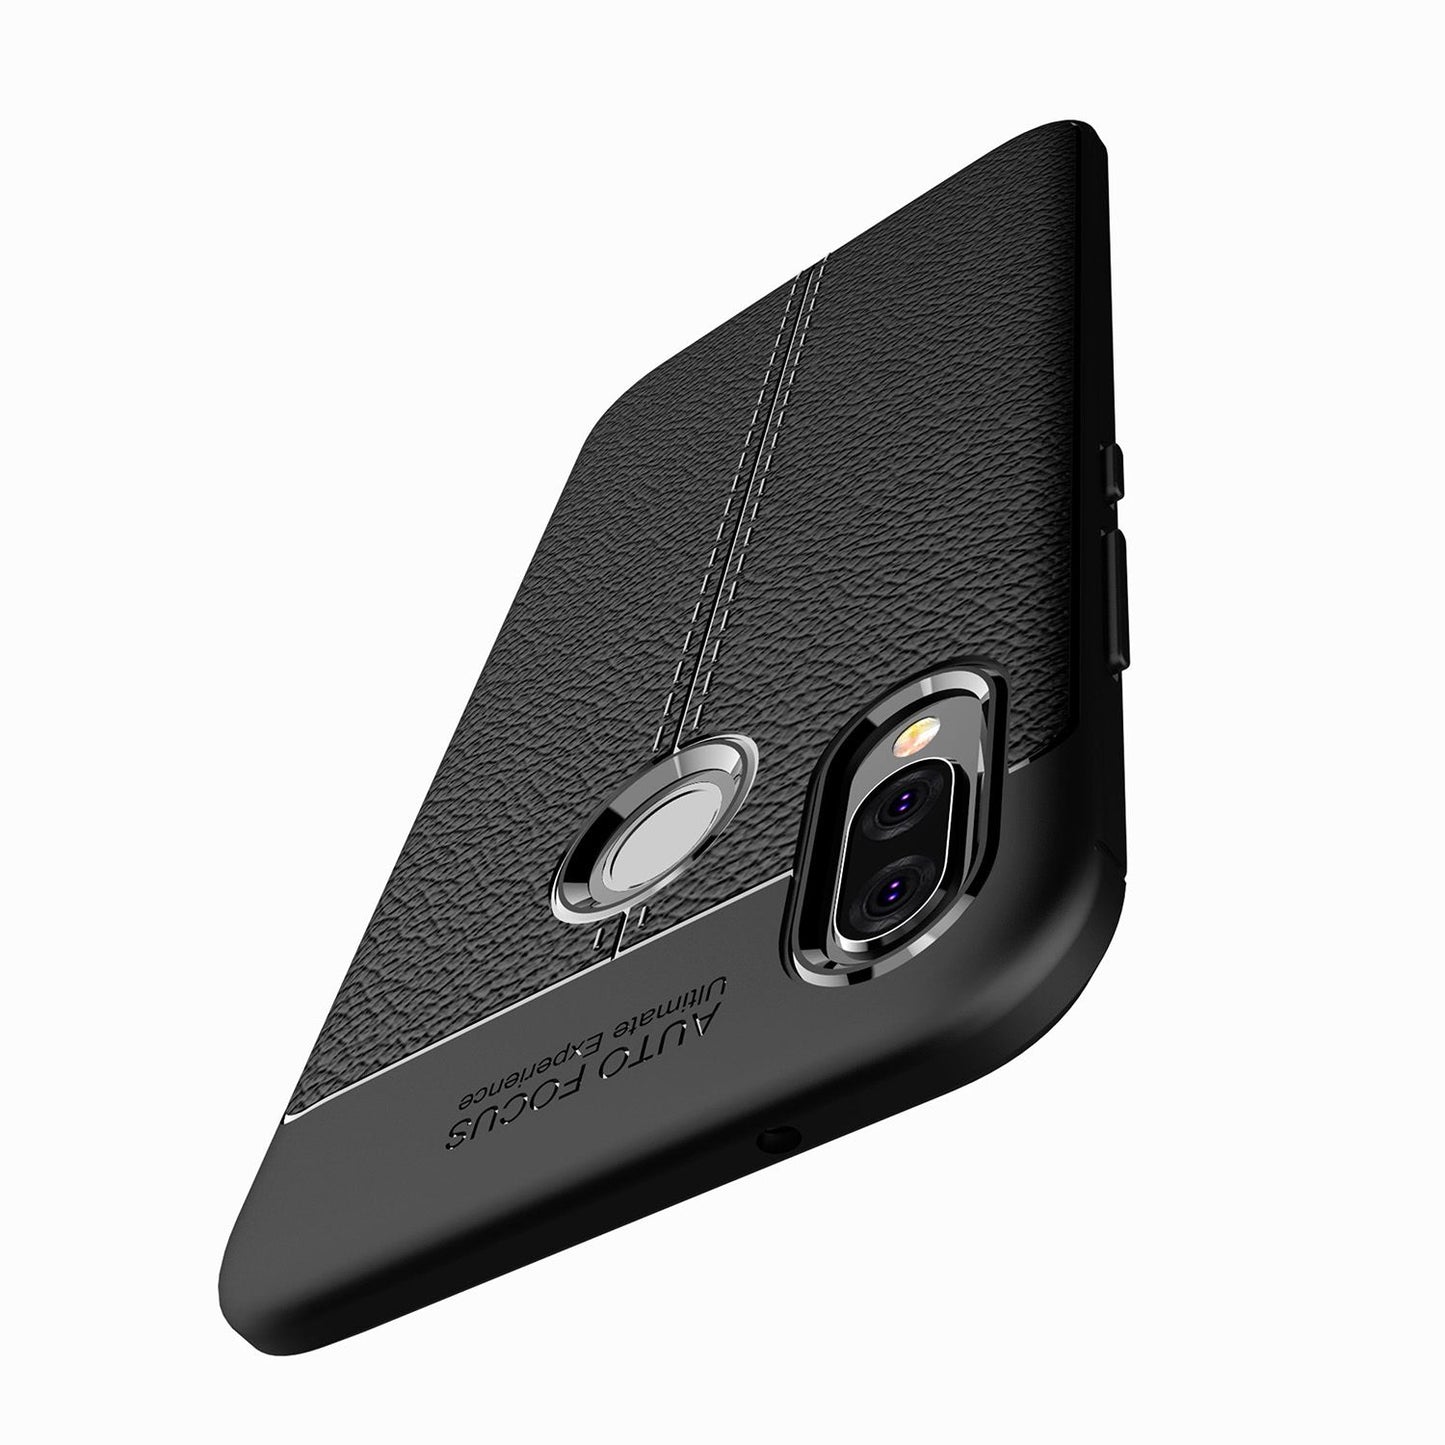 NALIA Handy Hülle für Huawei P20 Lite, Leder Look Silikon Slim Cover Case Schutz